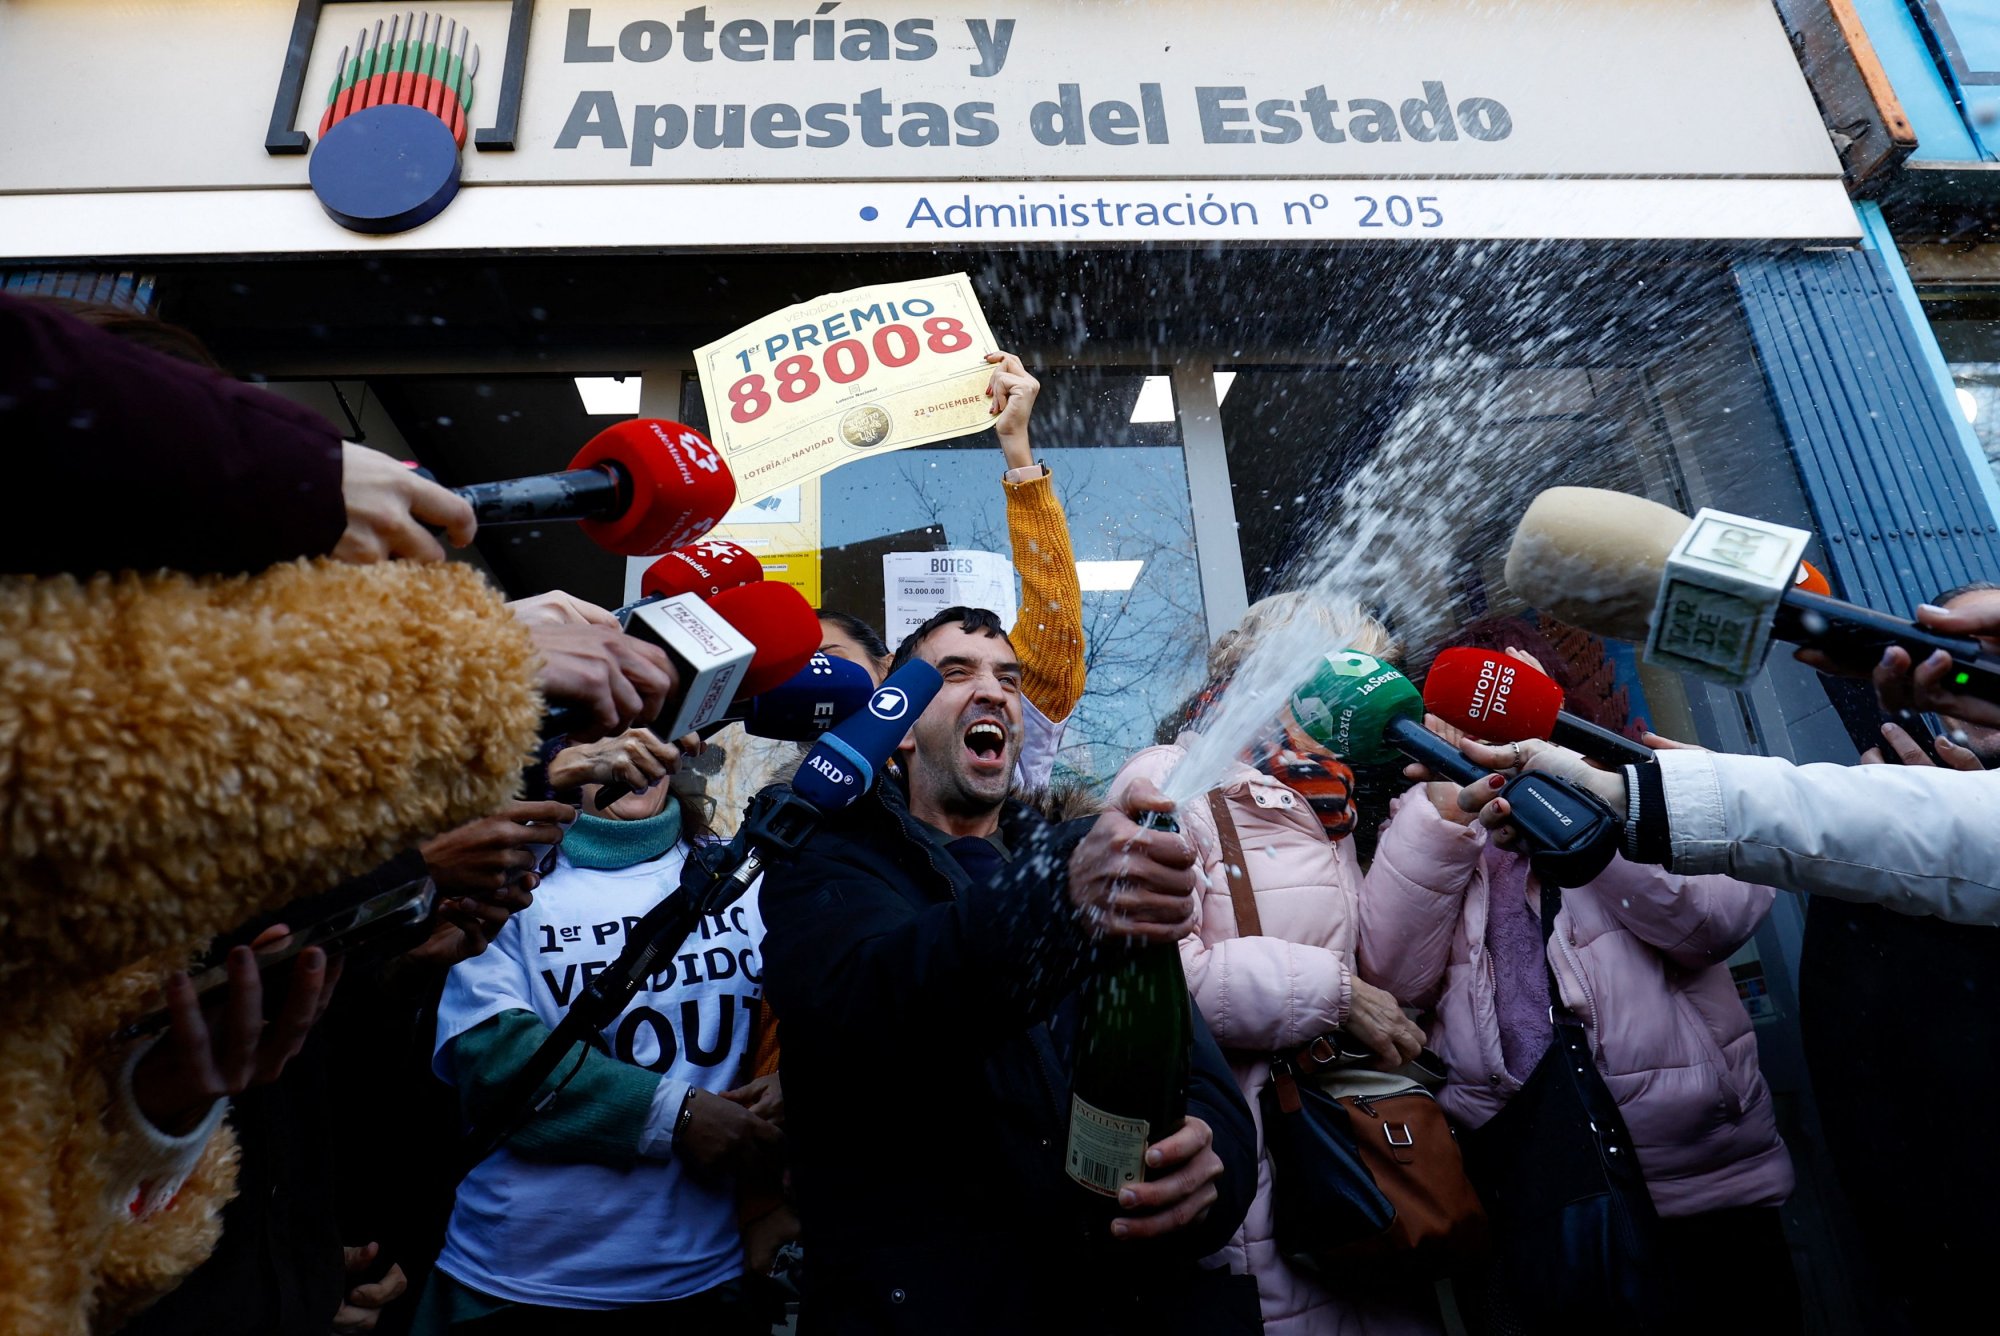 Ισπανία: Η μεγαλύτερη λοταρία του κόσμου μοιράζει 2,6 δισ. ευρώ - Τι είναι το «El Gordo»